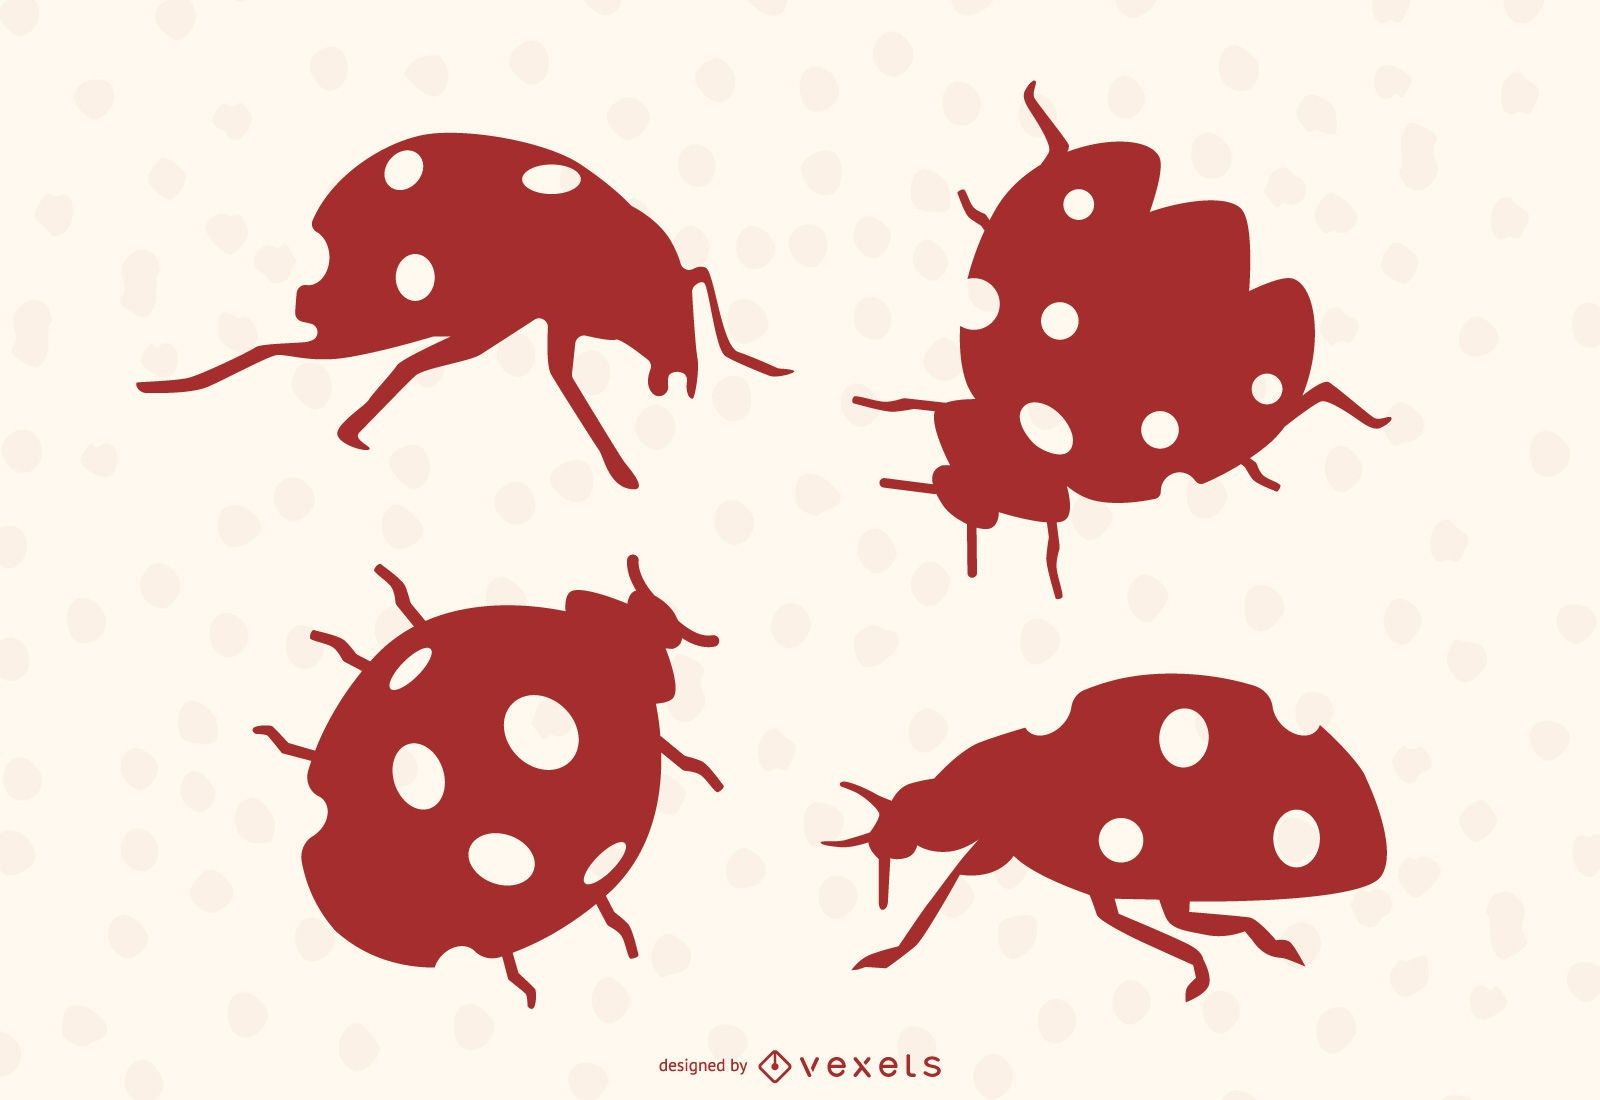 Ladybug silhouettes set